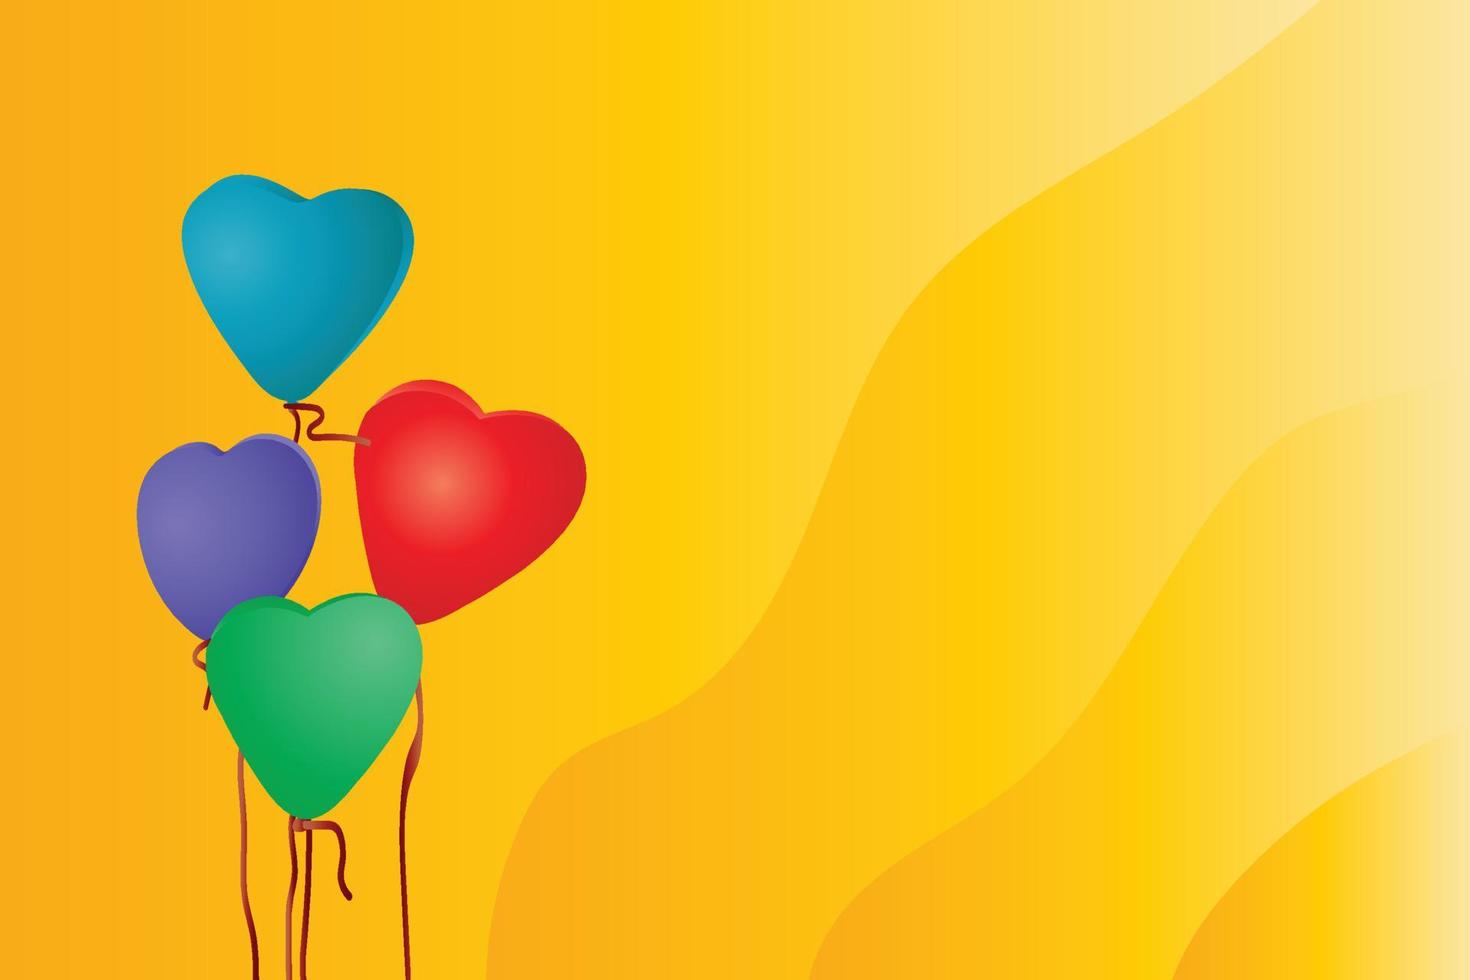 färgrik kärlek eller hjärta formad ballonger med trevlig gul bakgrund vektor